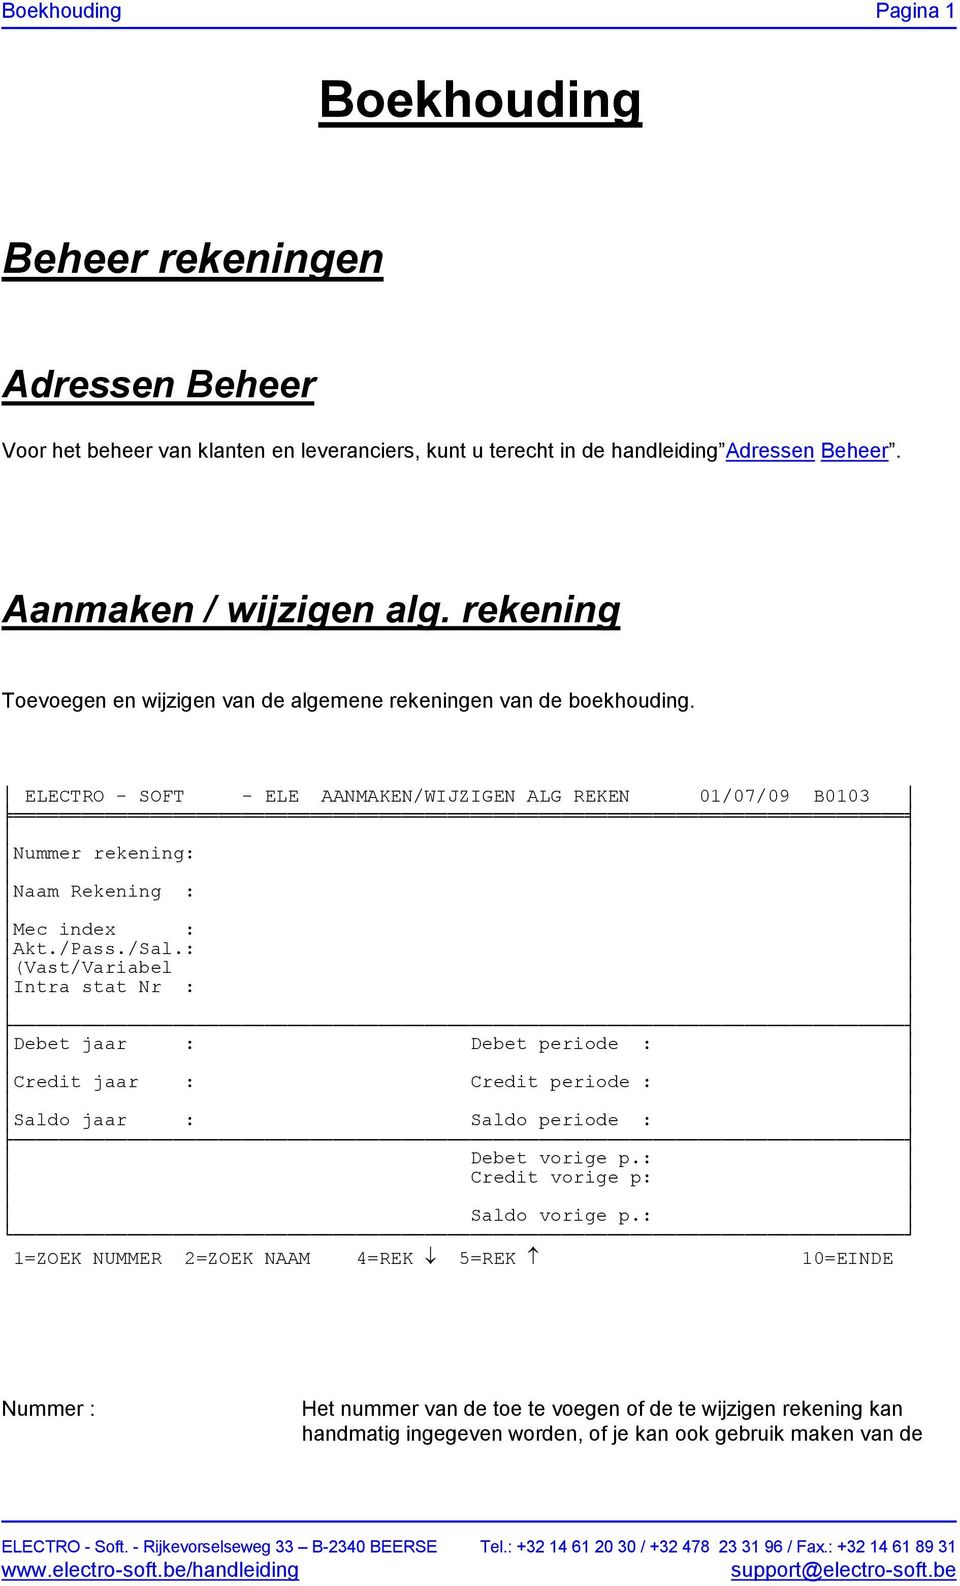 ELECTRO - SOFT - ELE AANMAKEN/WIJZIGEN ALG REKEN 01/07/09 B0103 Nummer rekening: Naam Rekening : Mec index : Akt./Pass./Sal.